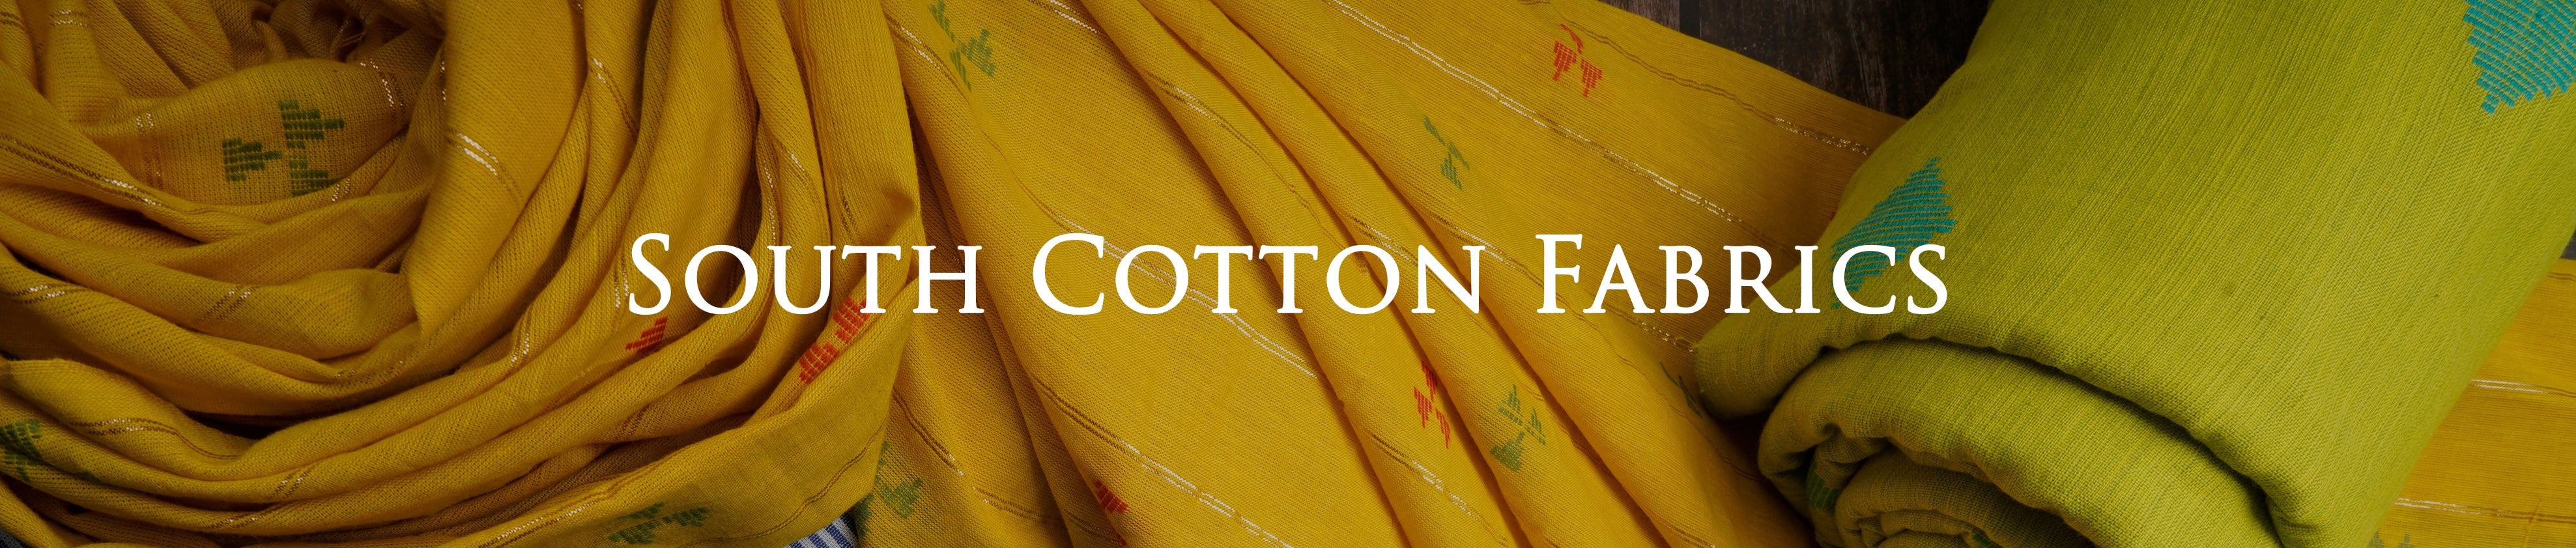 South Cotton Fabrics